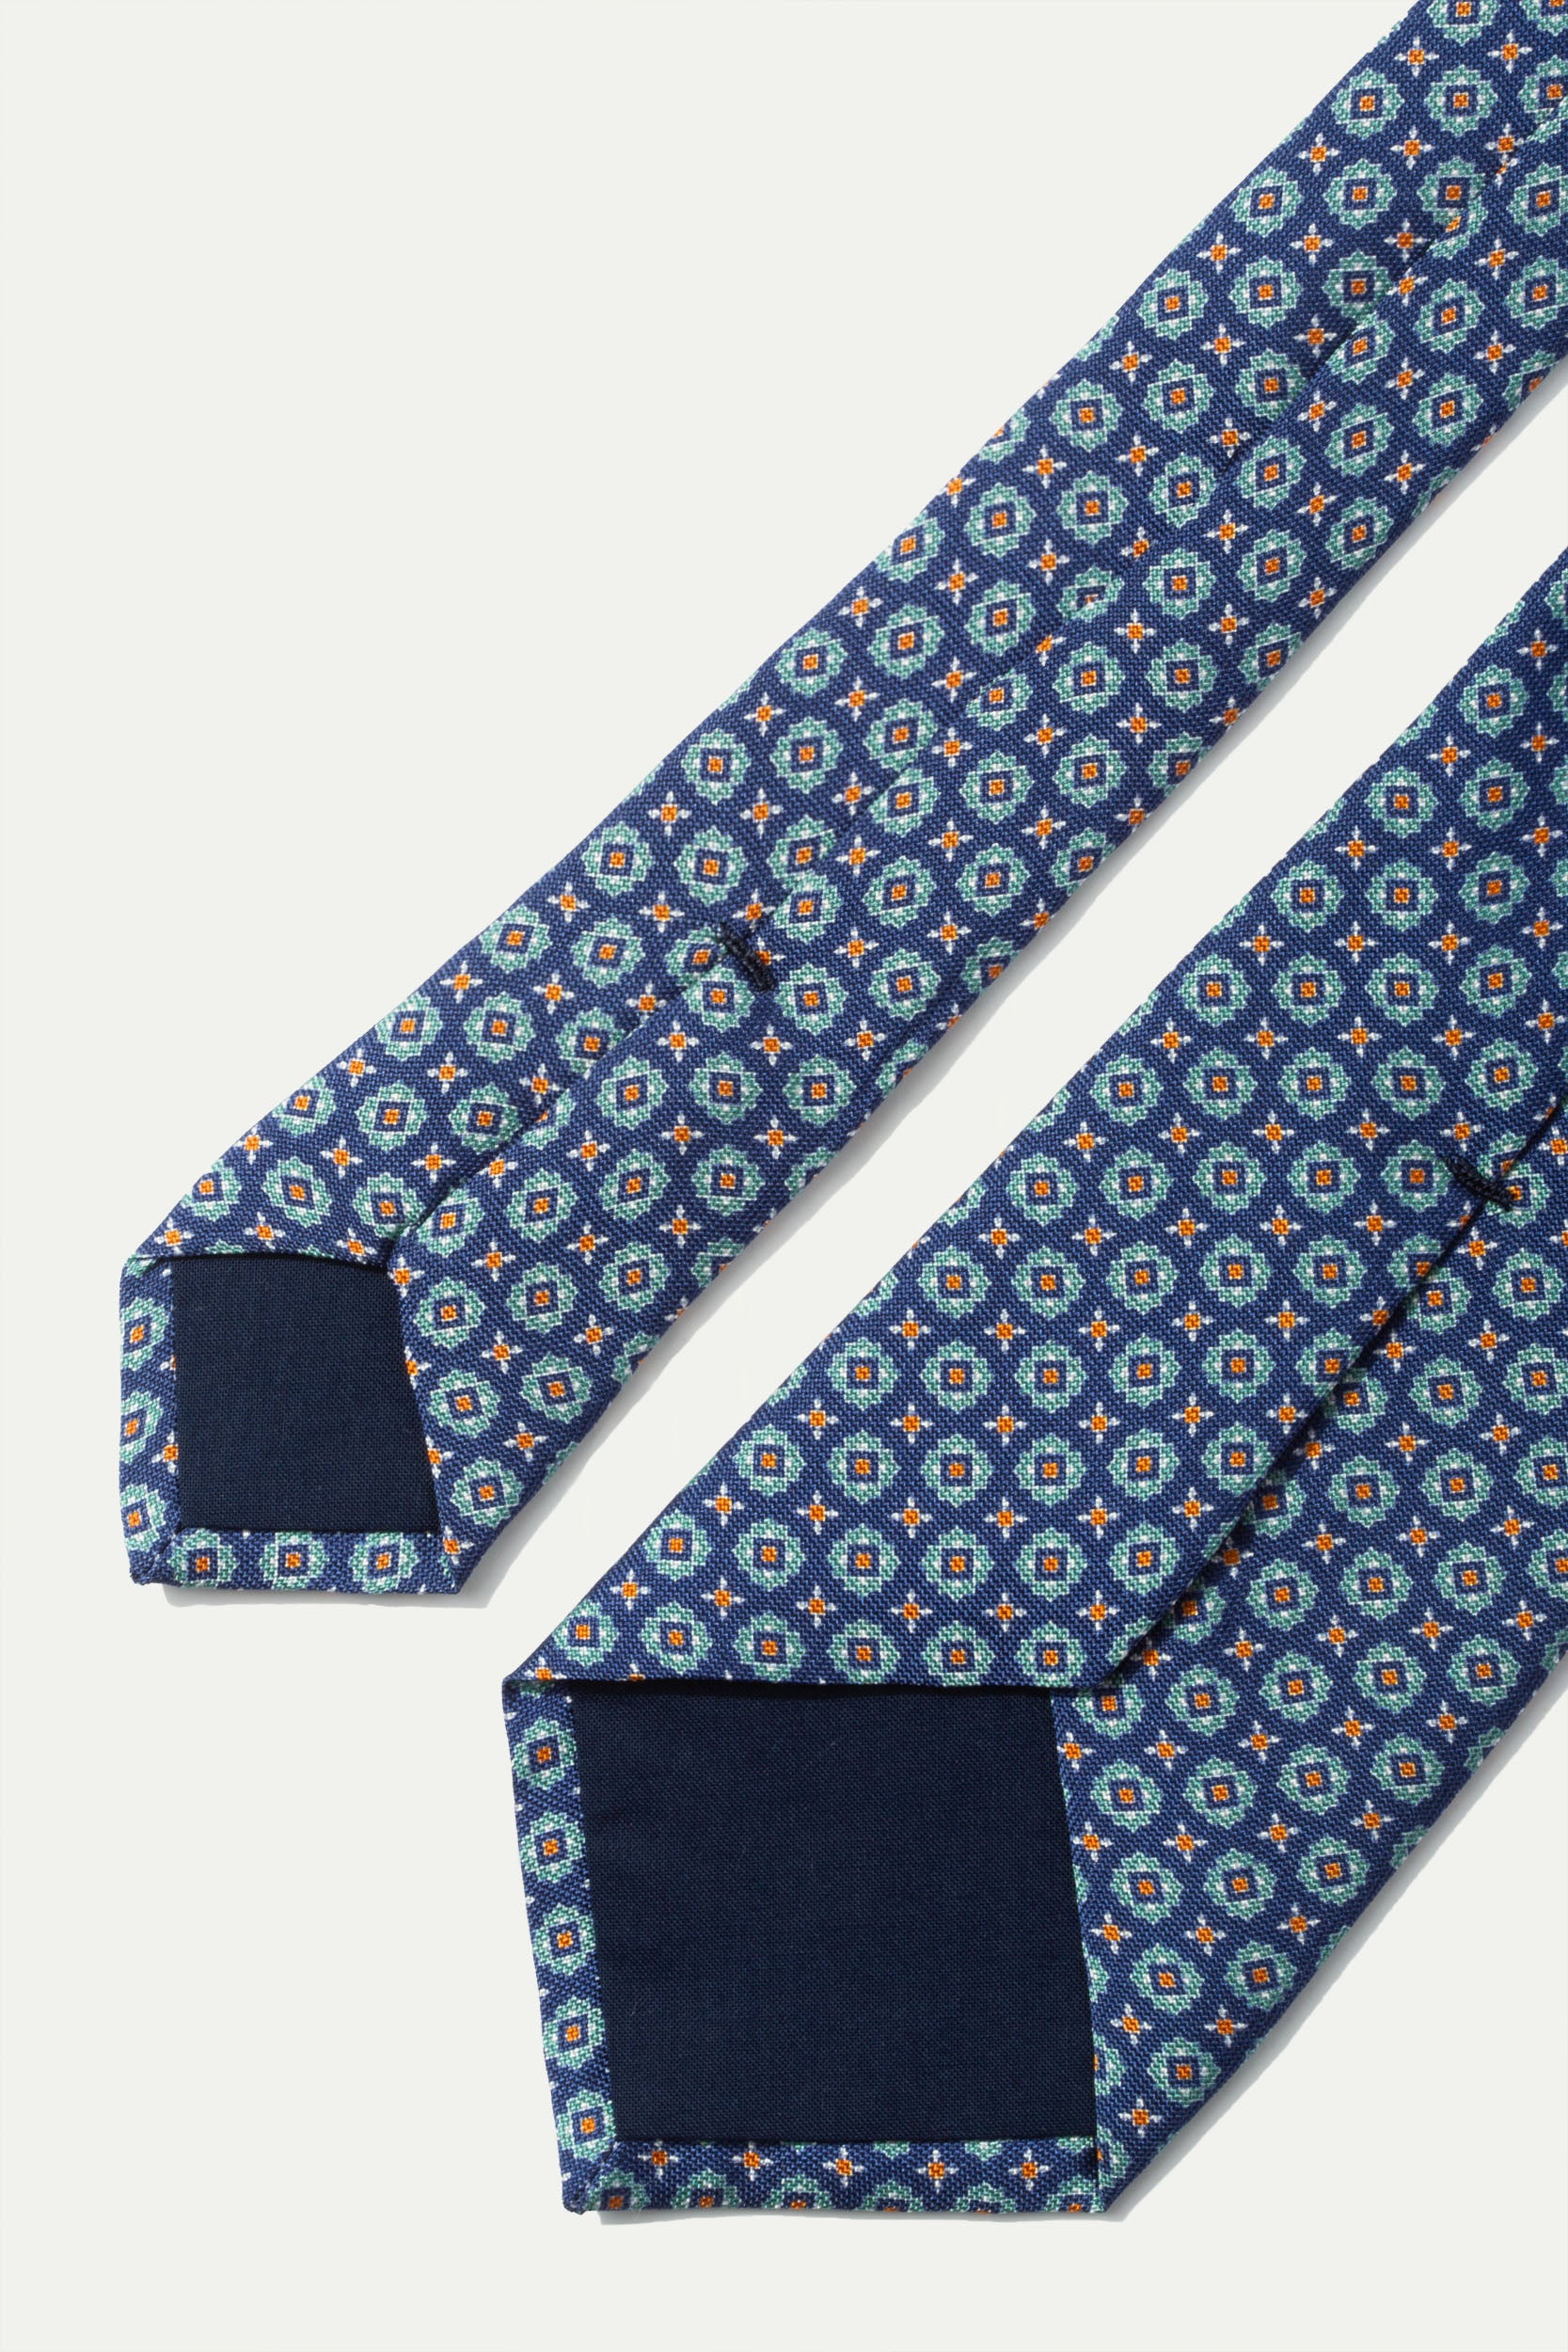 Cravate en soie légère bleue et verte - Made In Italy